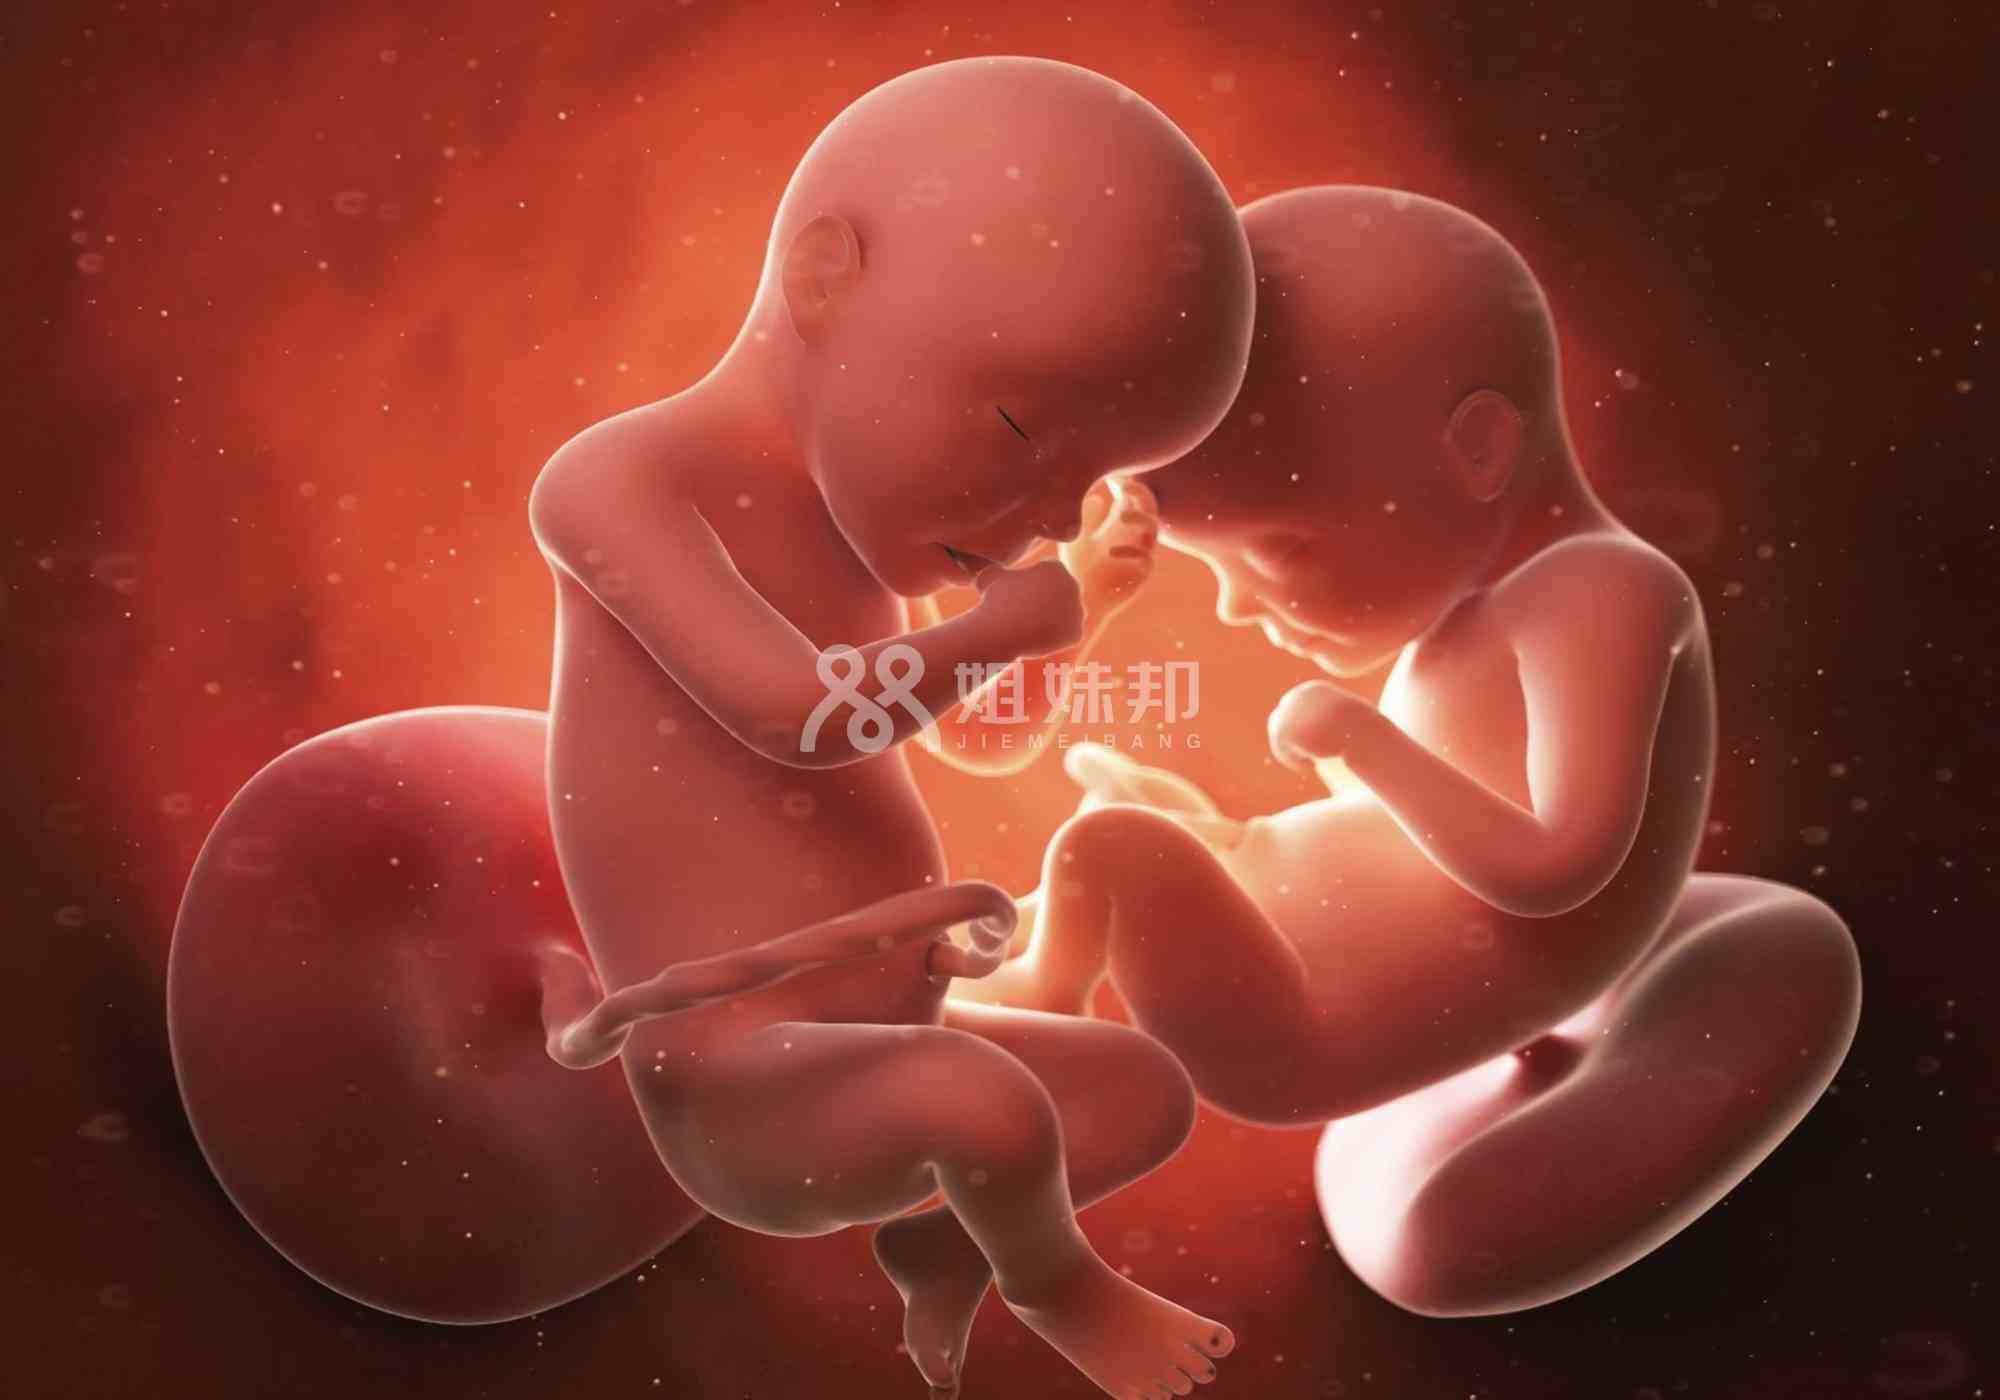 胎儿性别分为雌性和雄性